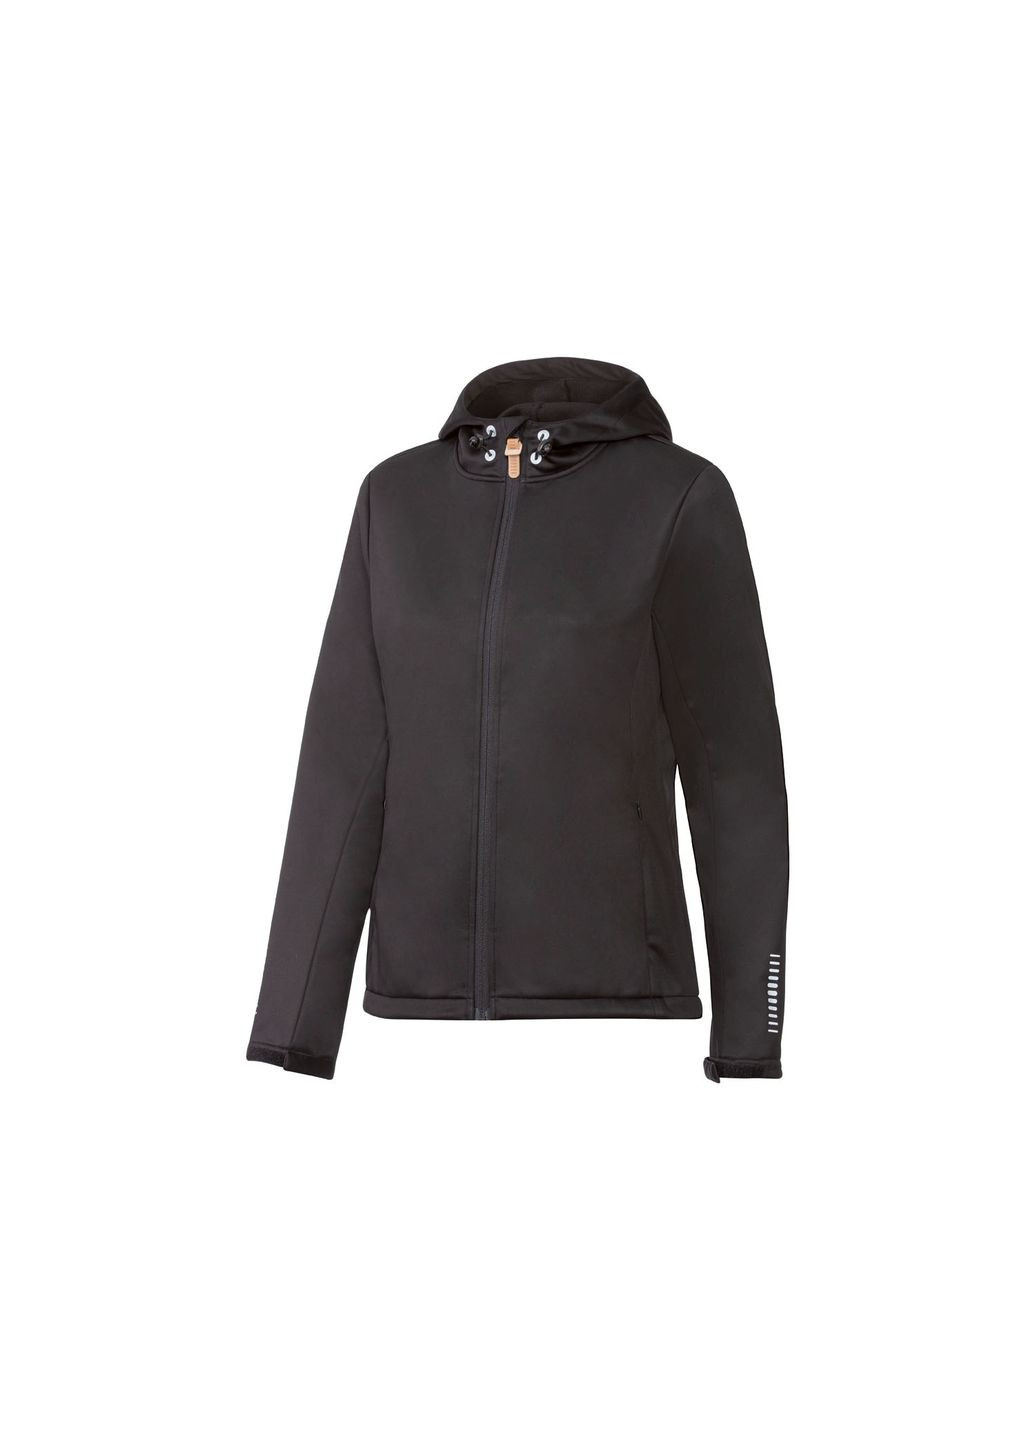 Черная демисезонная куртка oftshell водоотталкивающая и ветрозащитная для женщины 358117 s Crivit